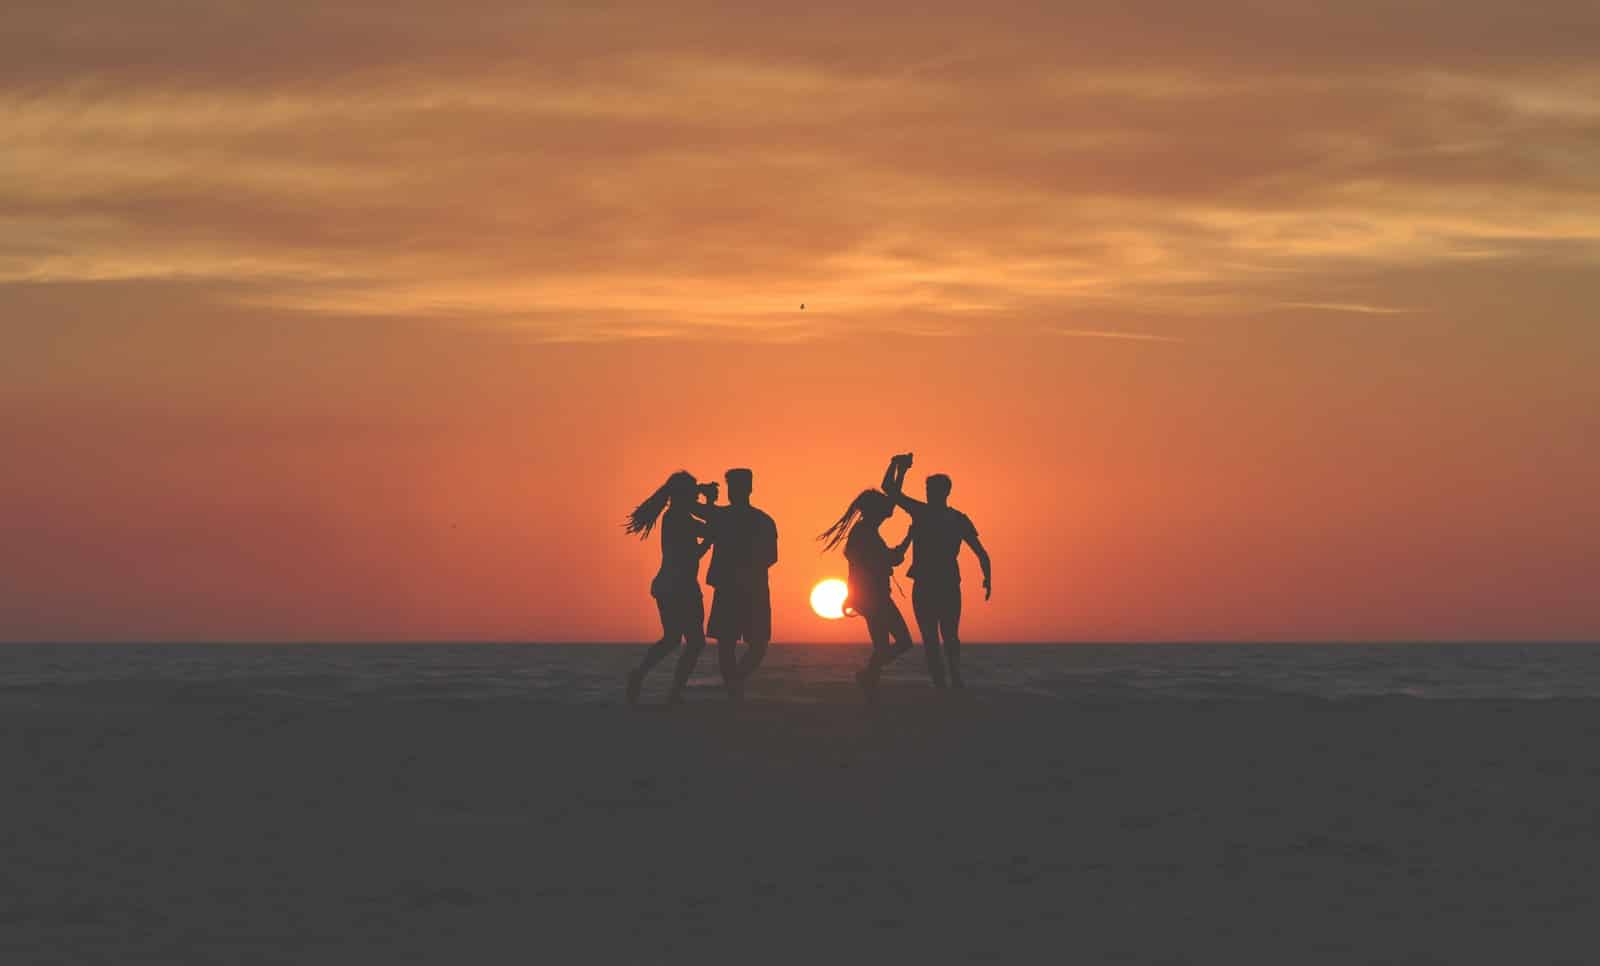 siluettfoto av fyra personer som dansar på sanden nära kusten